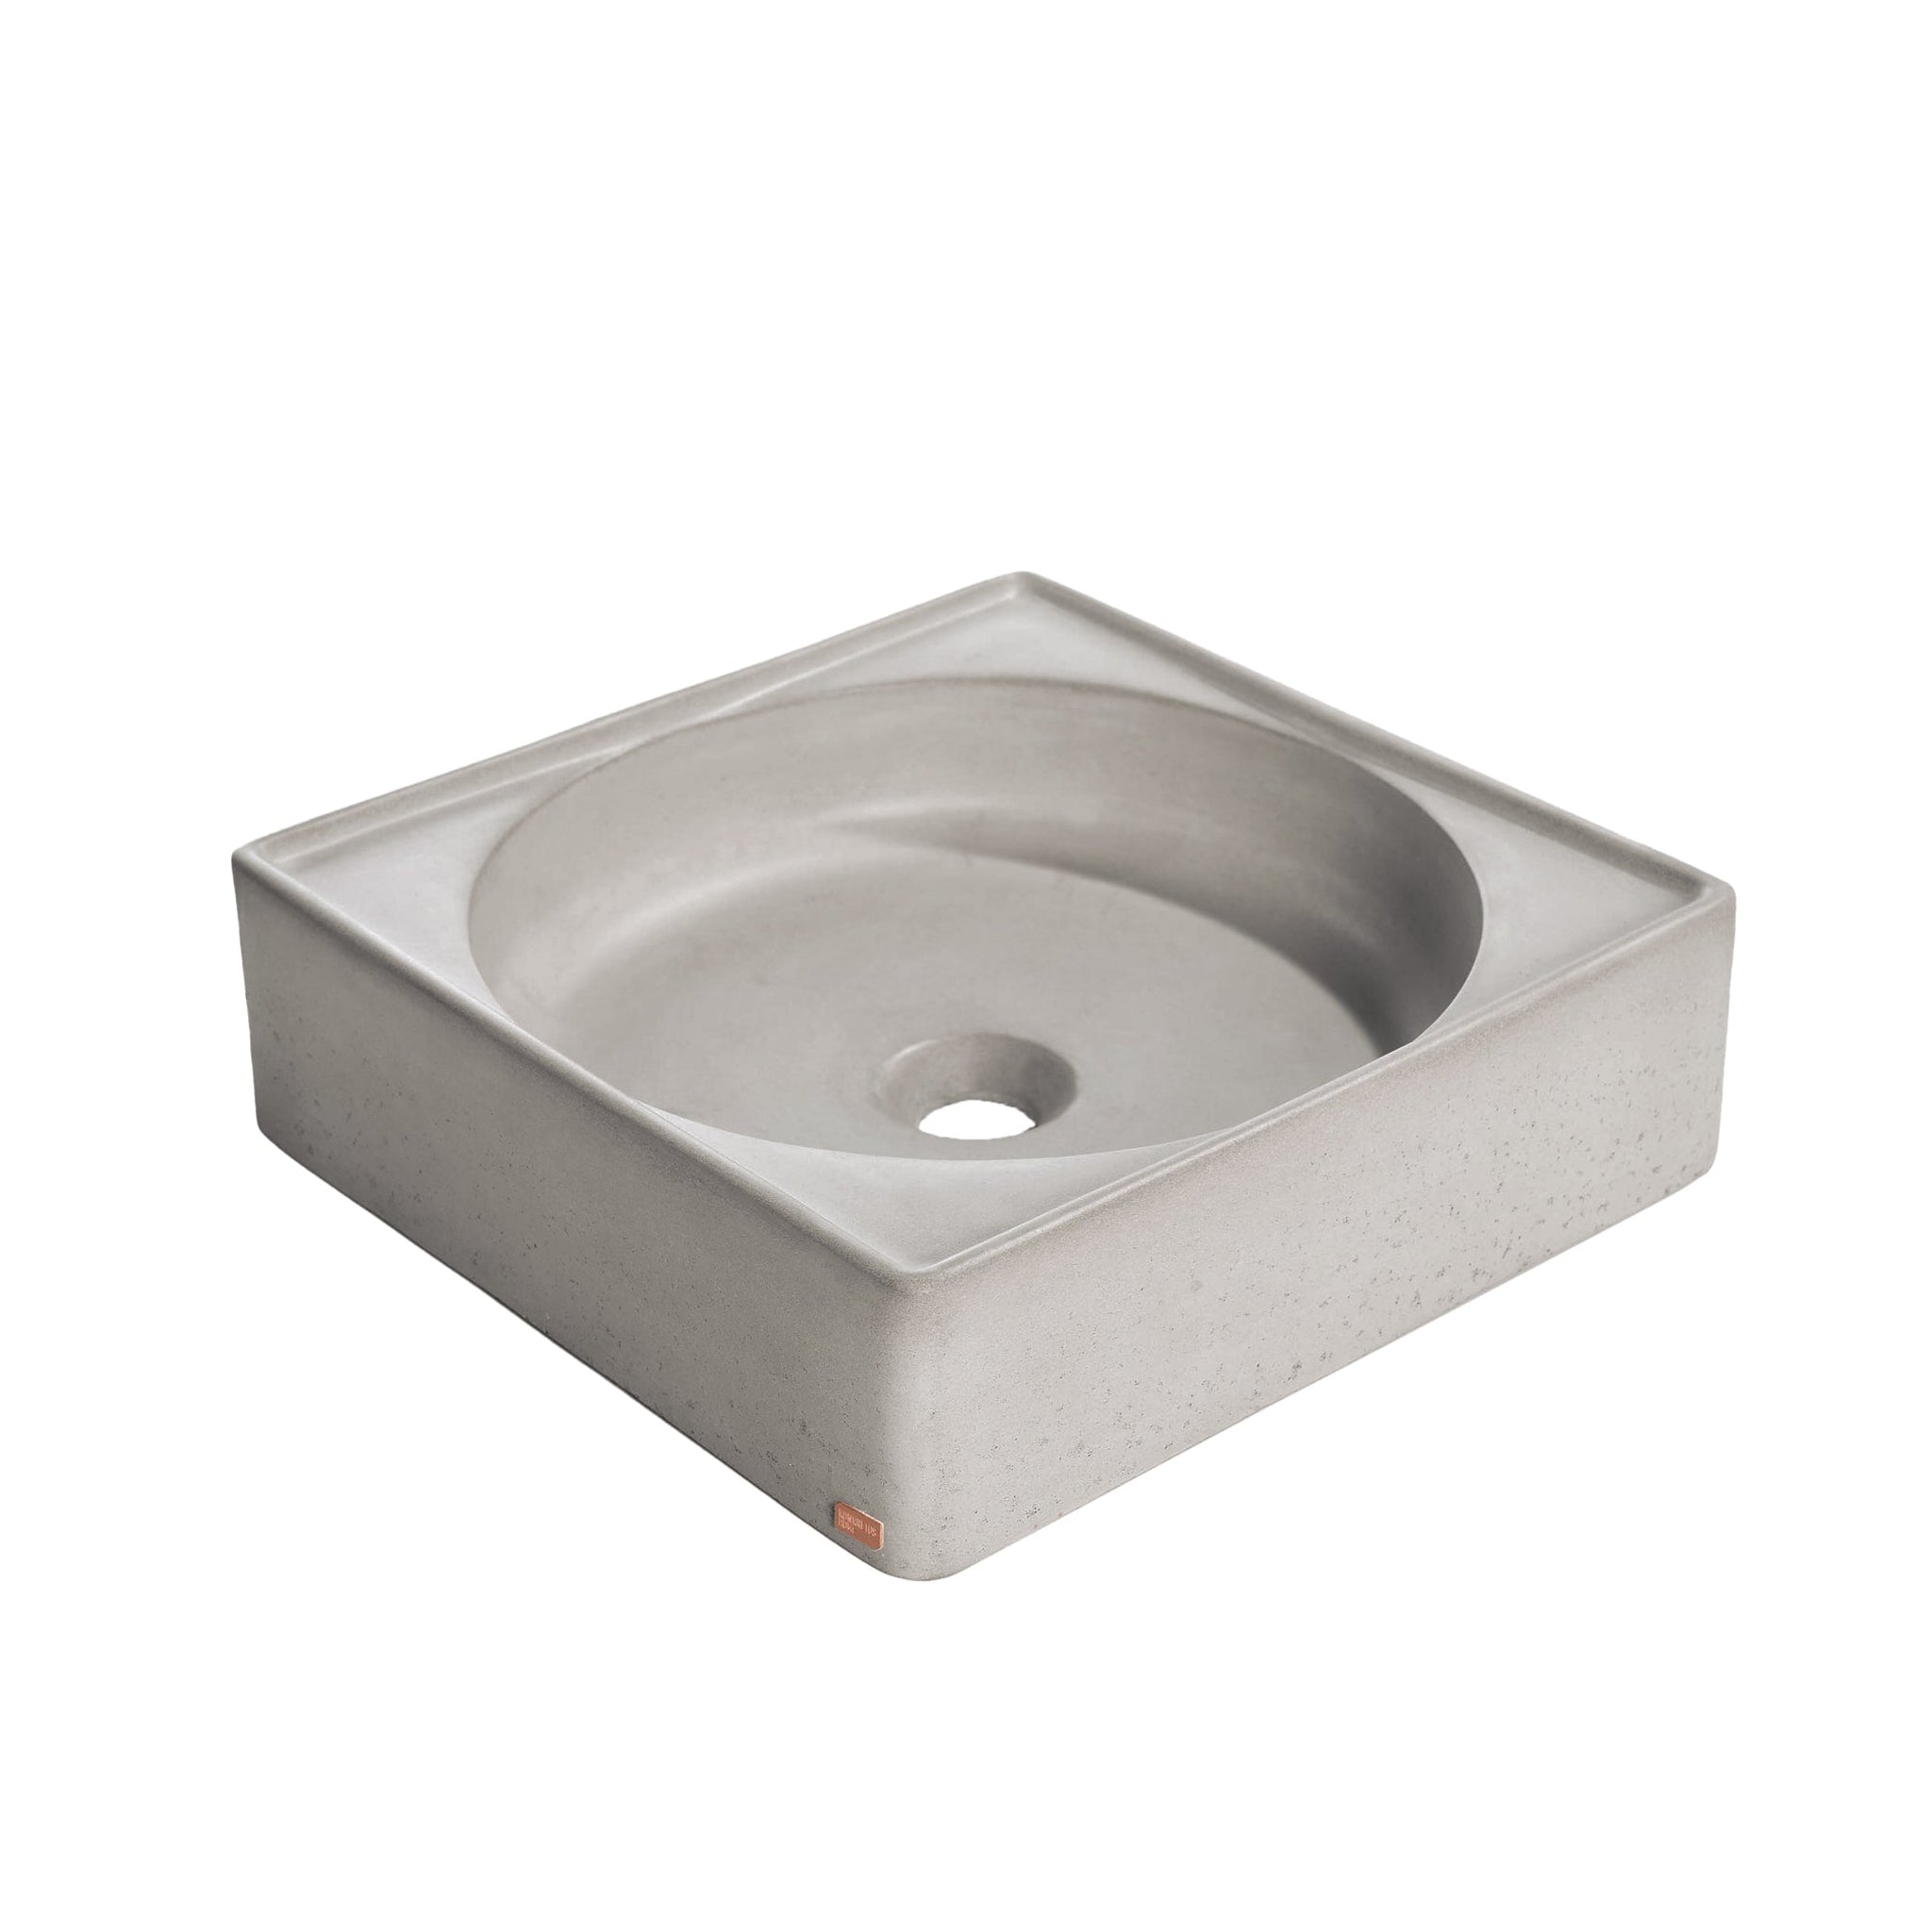 Konkretus, Konkretus Selv01 15" Rain Gray Top Mount Square Vessel Concrete Bathroom Sink